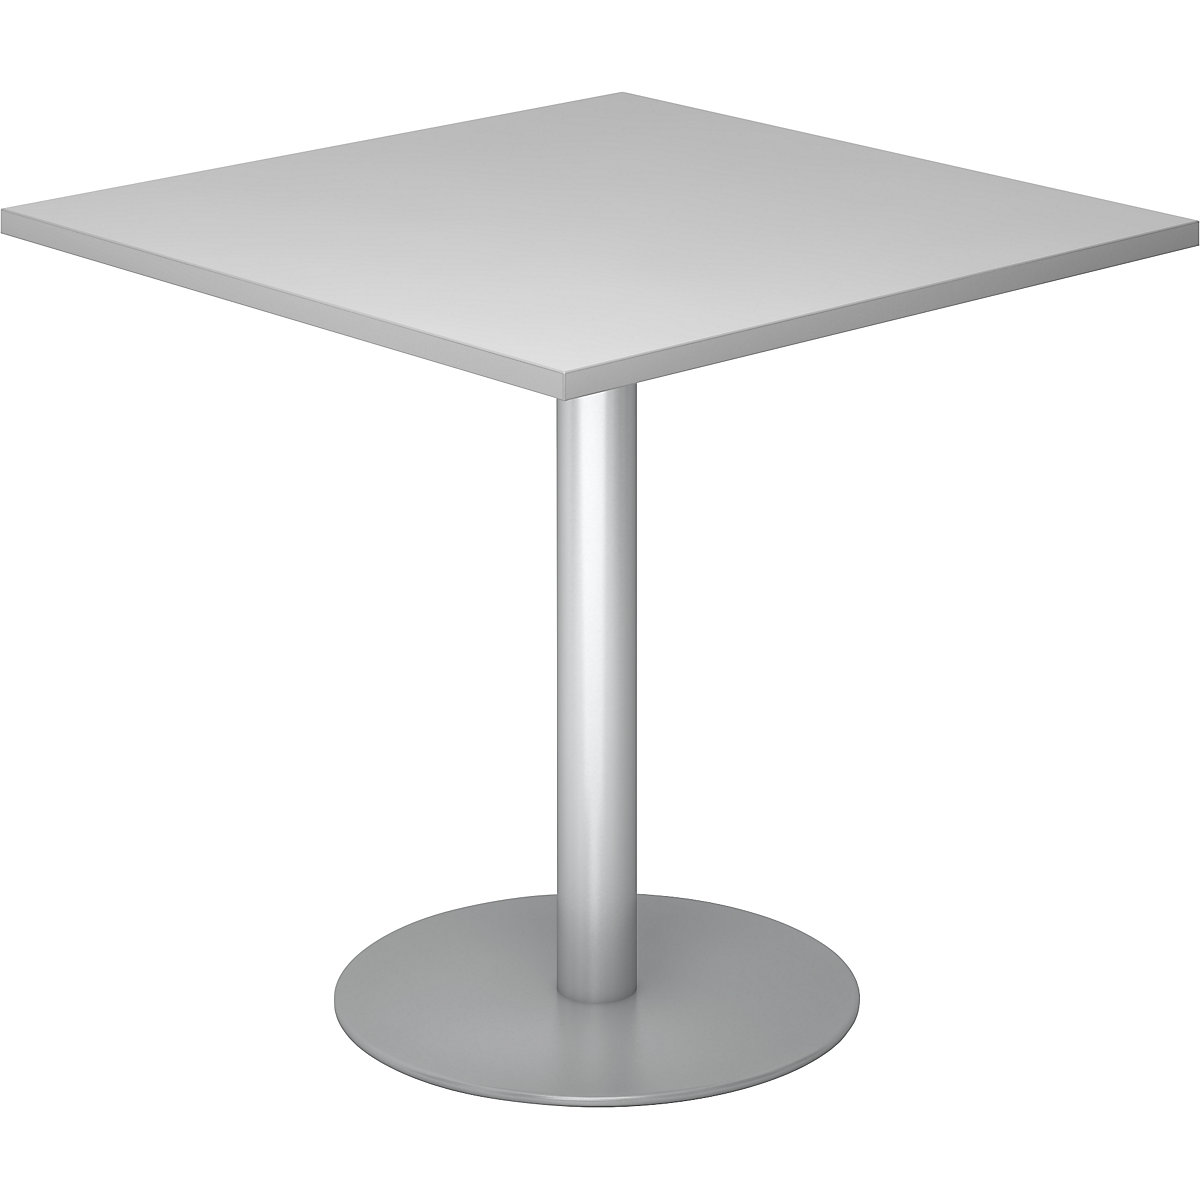 Tárgyalóasztal, h x szé 800 x 800 mm, 755 mm magas, ezüst váz, világosszürke asztallap